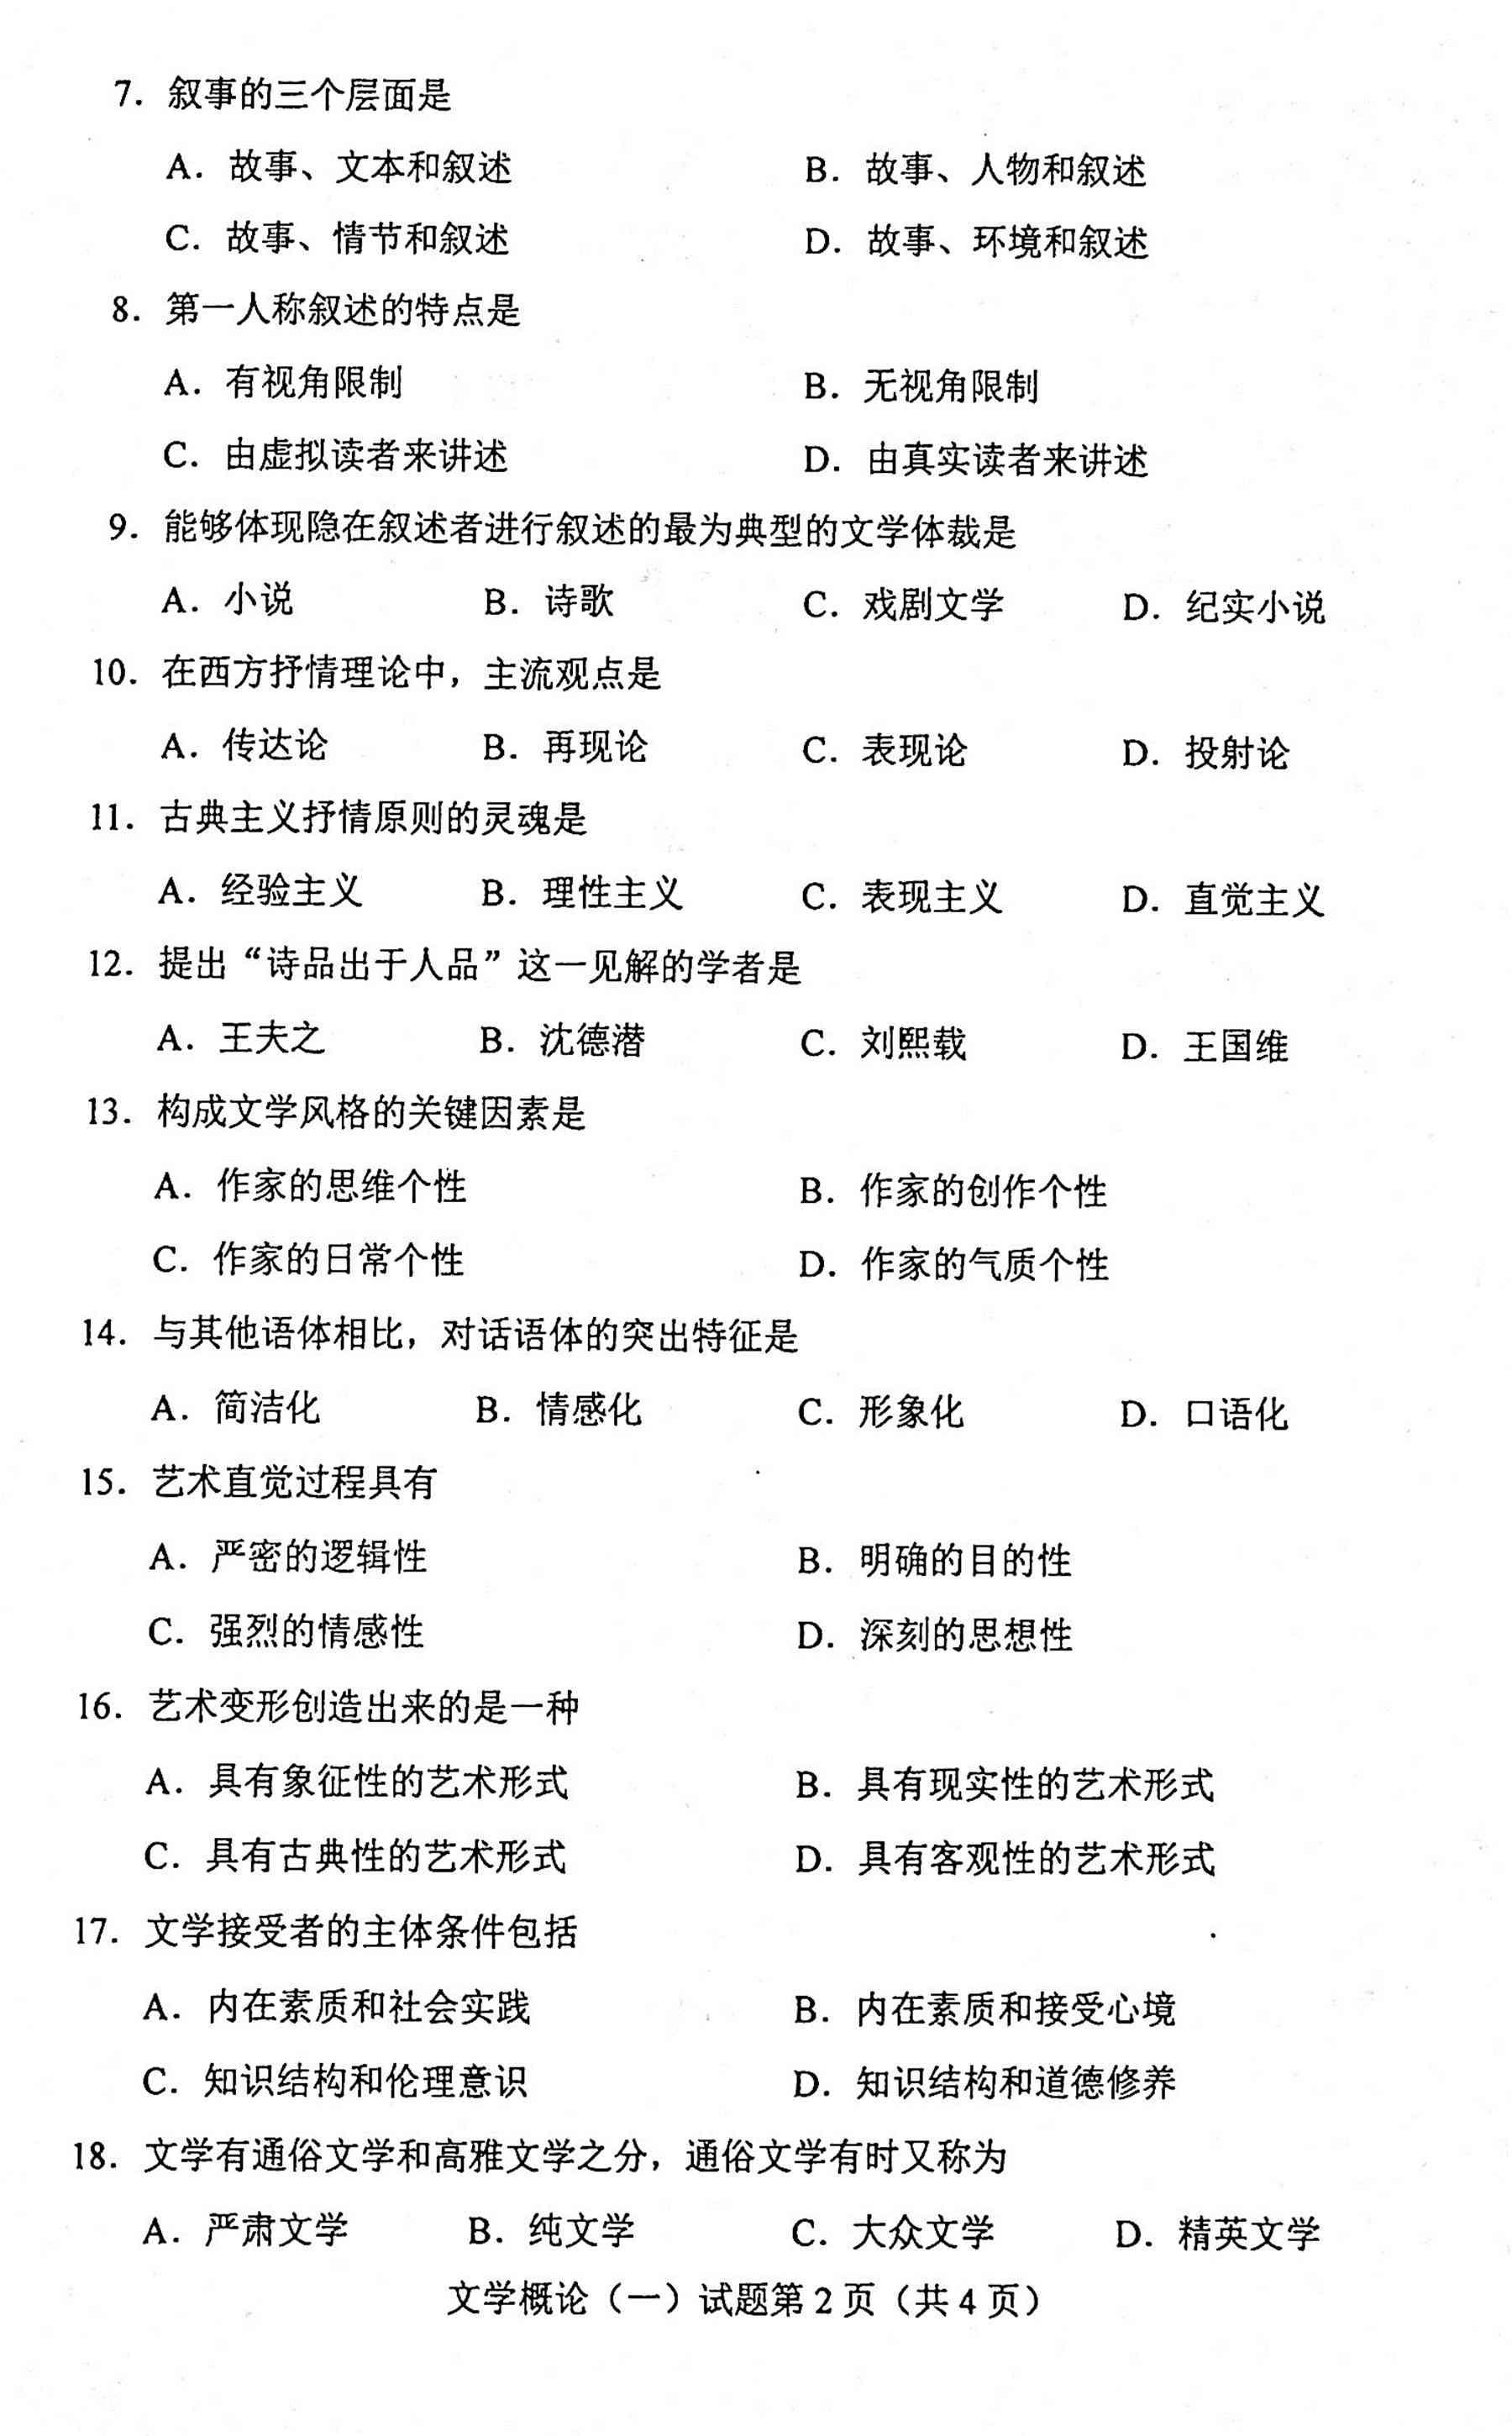 贵州省2020年10月自考00529文学概论（一）真题及答案